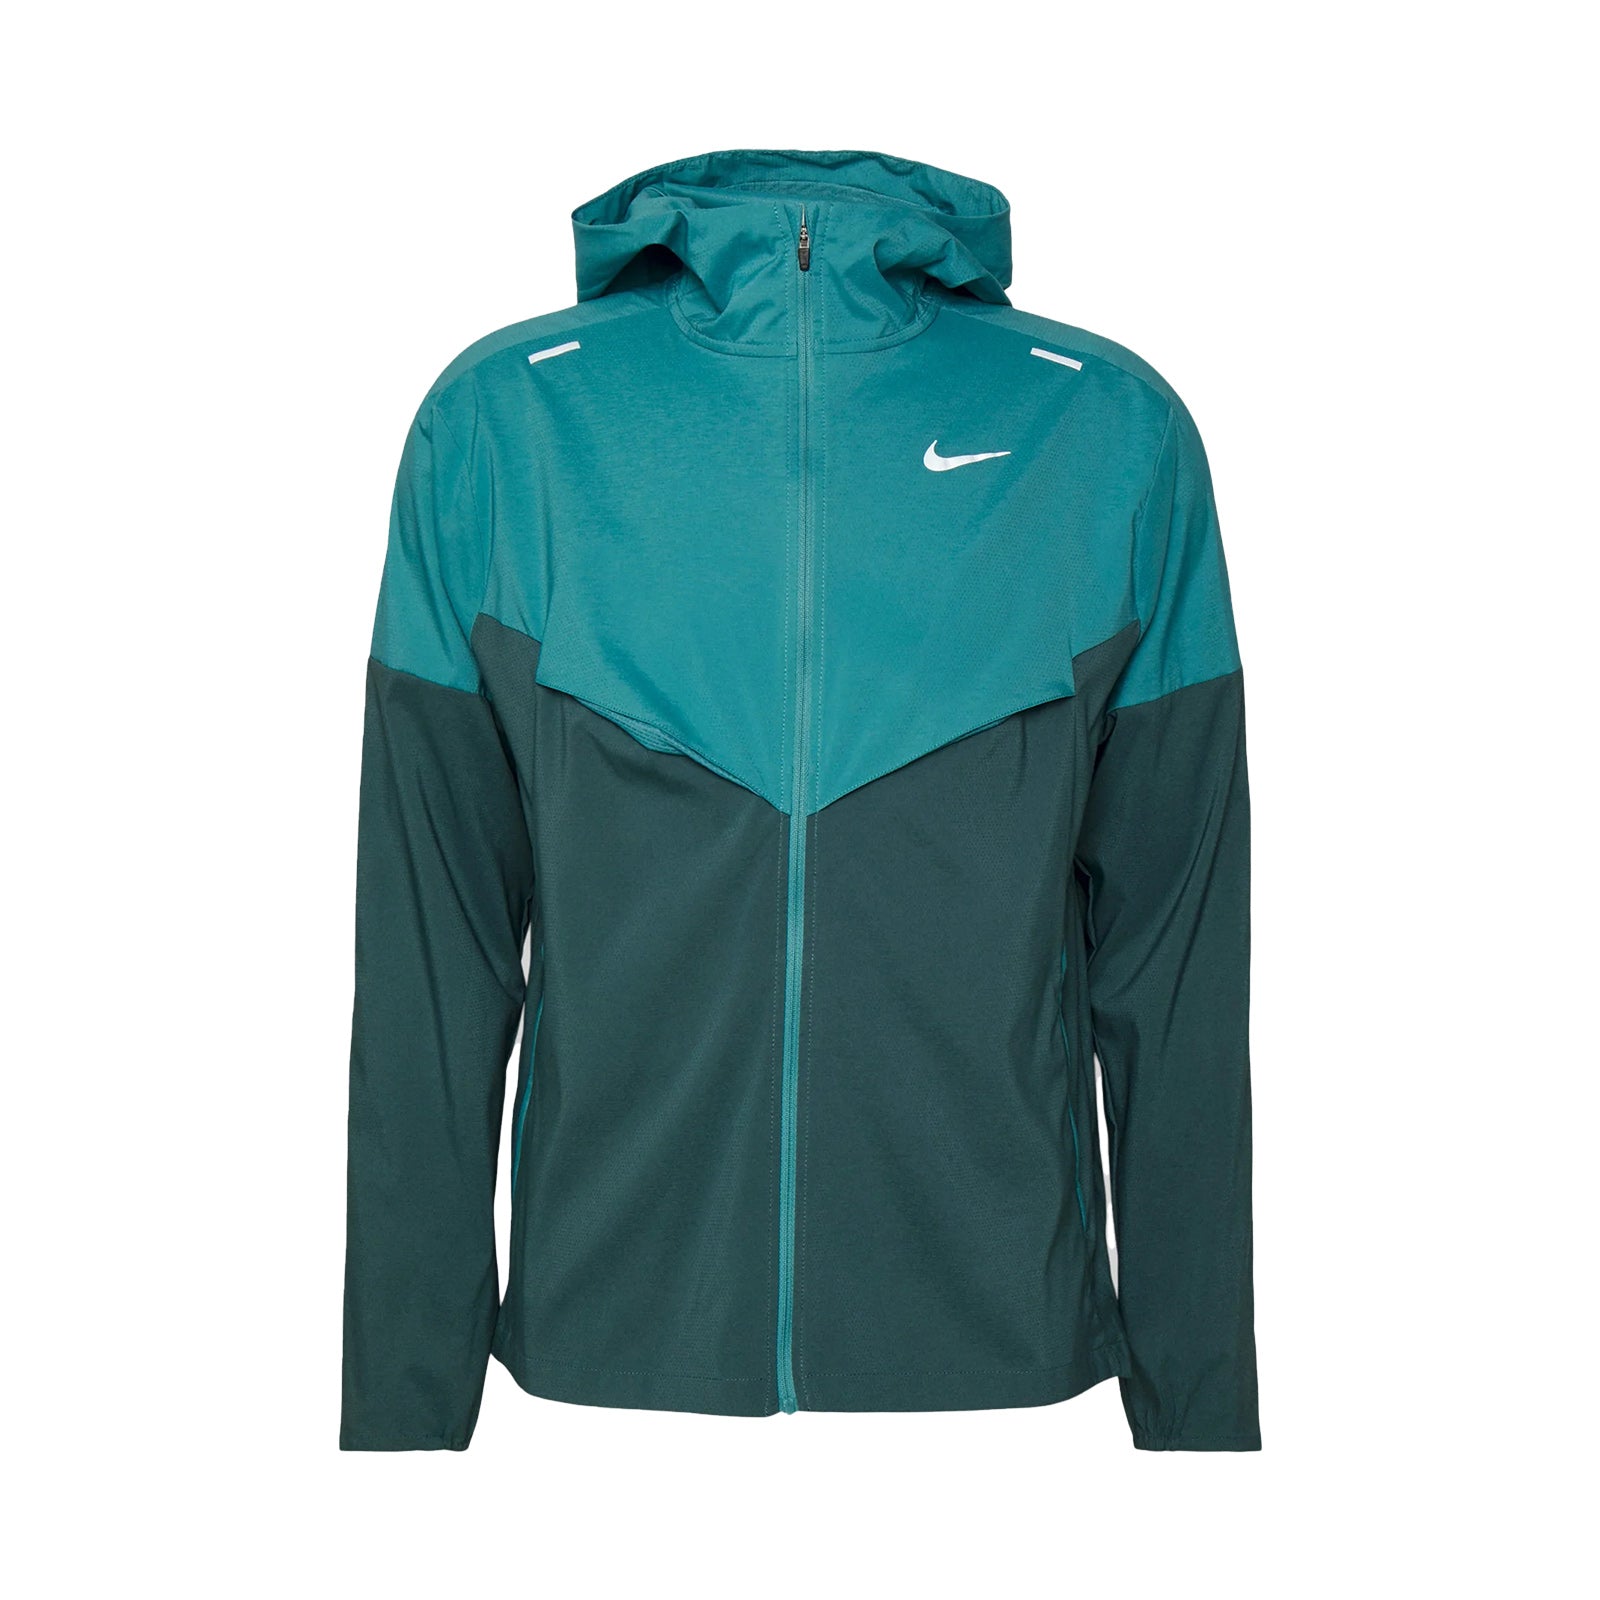 Nike UV Windrunner Jacket (Teal Green)